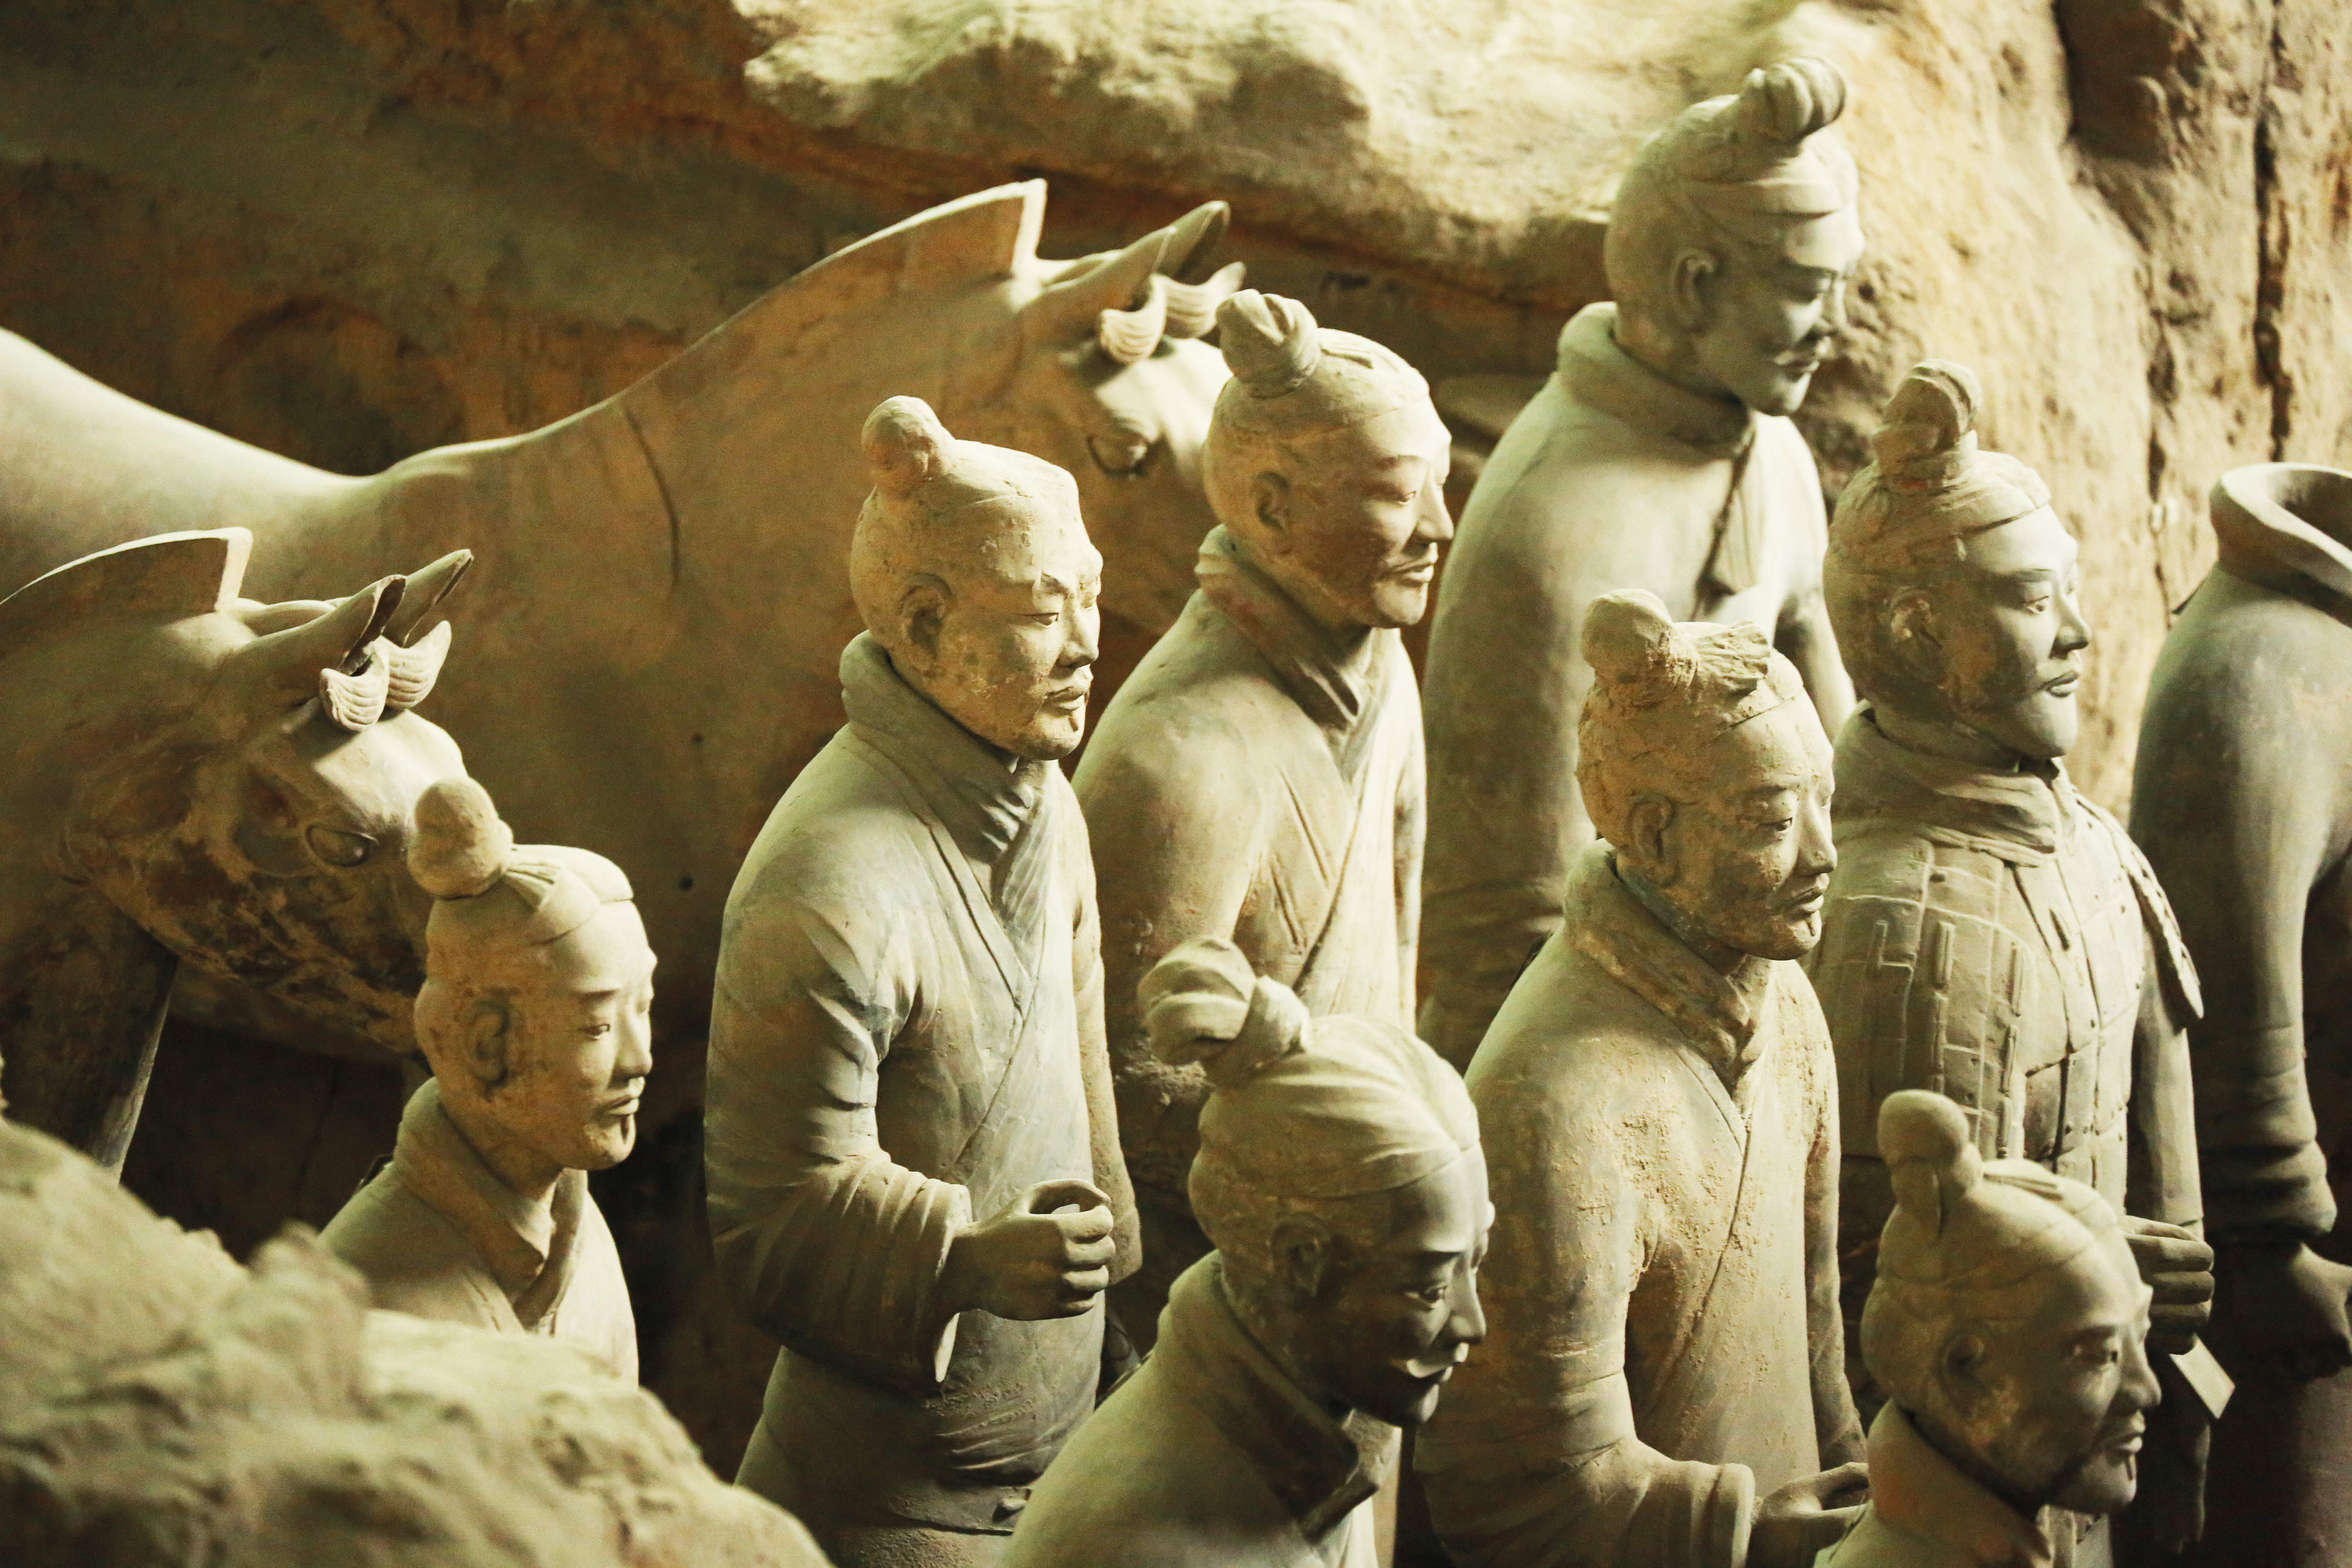 Terracotta Warriors, Xian, china tour guide